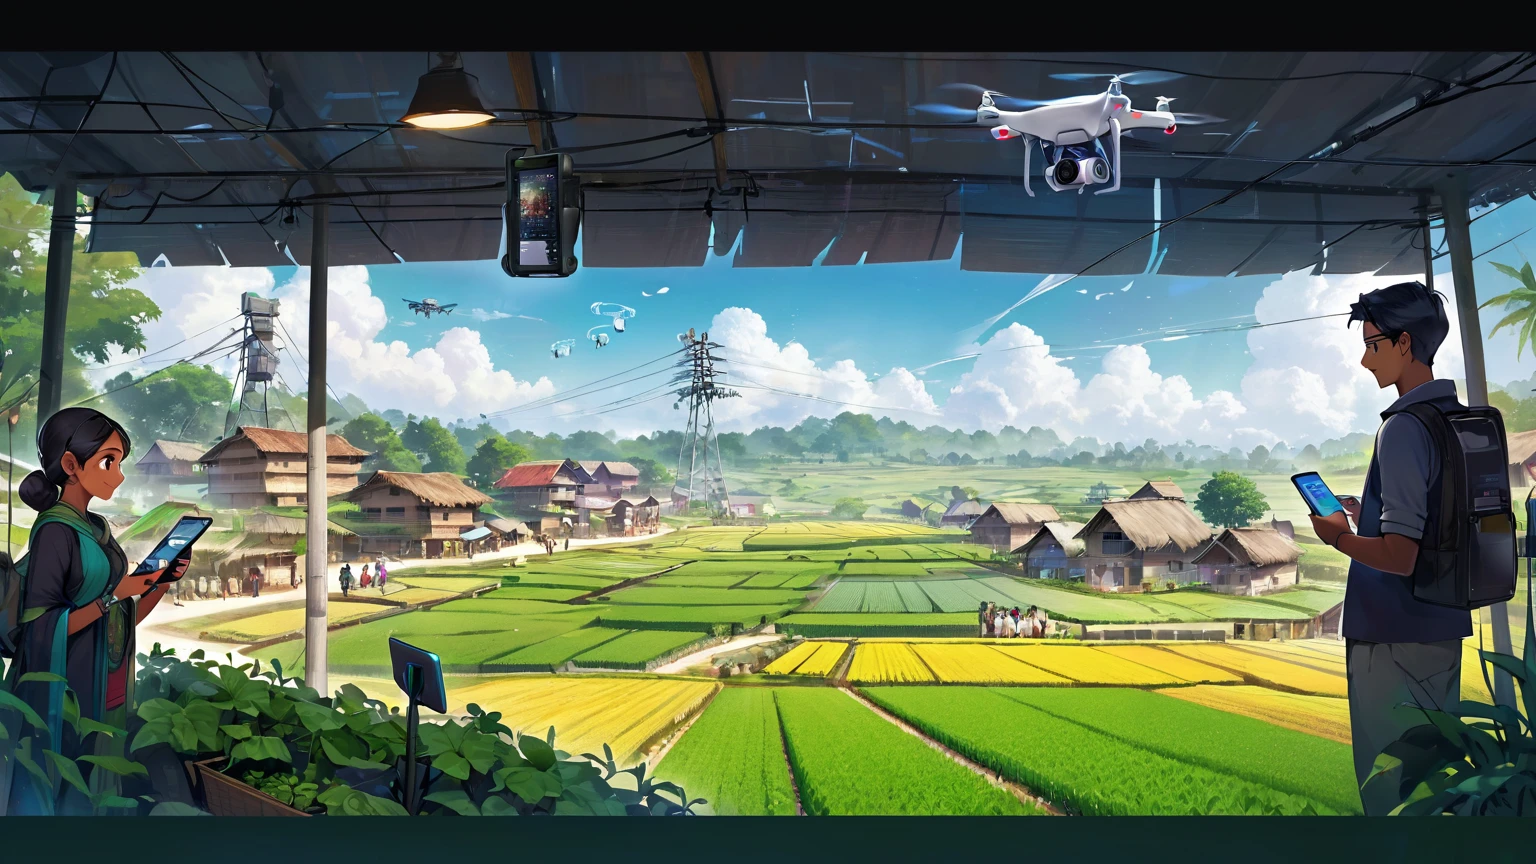 (방글라데시)), poster image of a vibrant landscape of 방글라데시, 전통과 기술이 만나는 곳, a 스마트빌리지 emerges., 스마트빌리지: 전통과 기술을 연결하는 커뮤니티: 인터넷과 컴퓨터를 받아들이는 마을 사람들, 일상 생활과 업무를 향상시킵니다.. 현대 농업: 더 나은 작물 관리 및 시장 접근을 위해 스마트폰을 활용하는 농부들. 기술 지원 가족: 기술을 통한 향상된 의사소통과 교육으로 혜택을 받는 행복한 가족. 혁신적인 인프라: 원활한 연결을 보장하는 모바일 타워, 농업을 지원하는 드론과 로봇으로